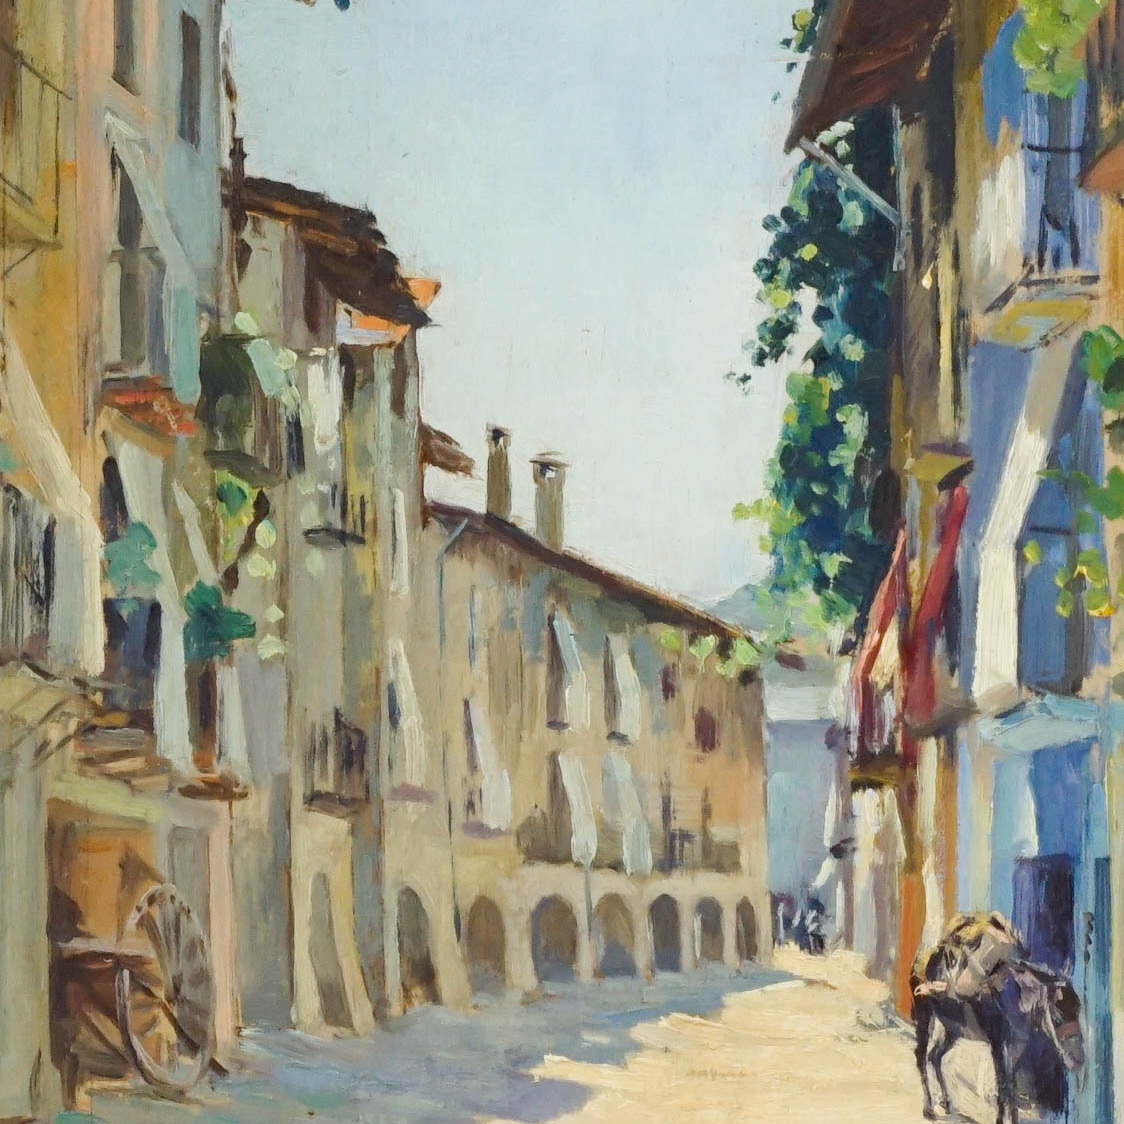 Street Scene / Oil on Canvas